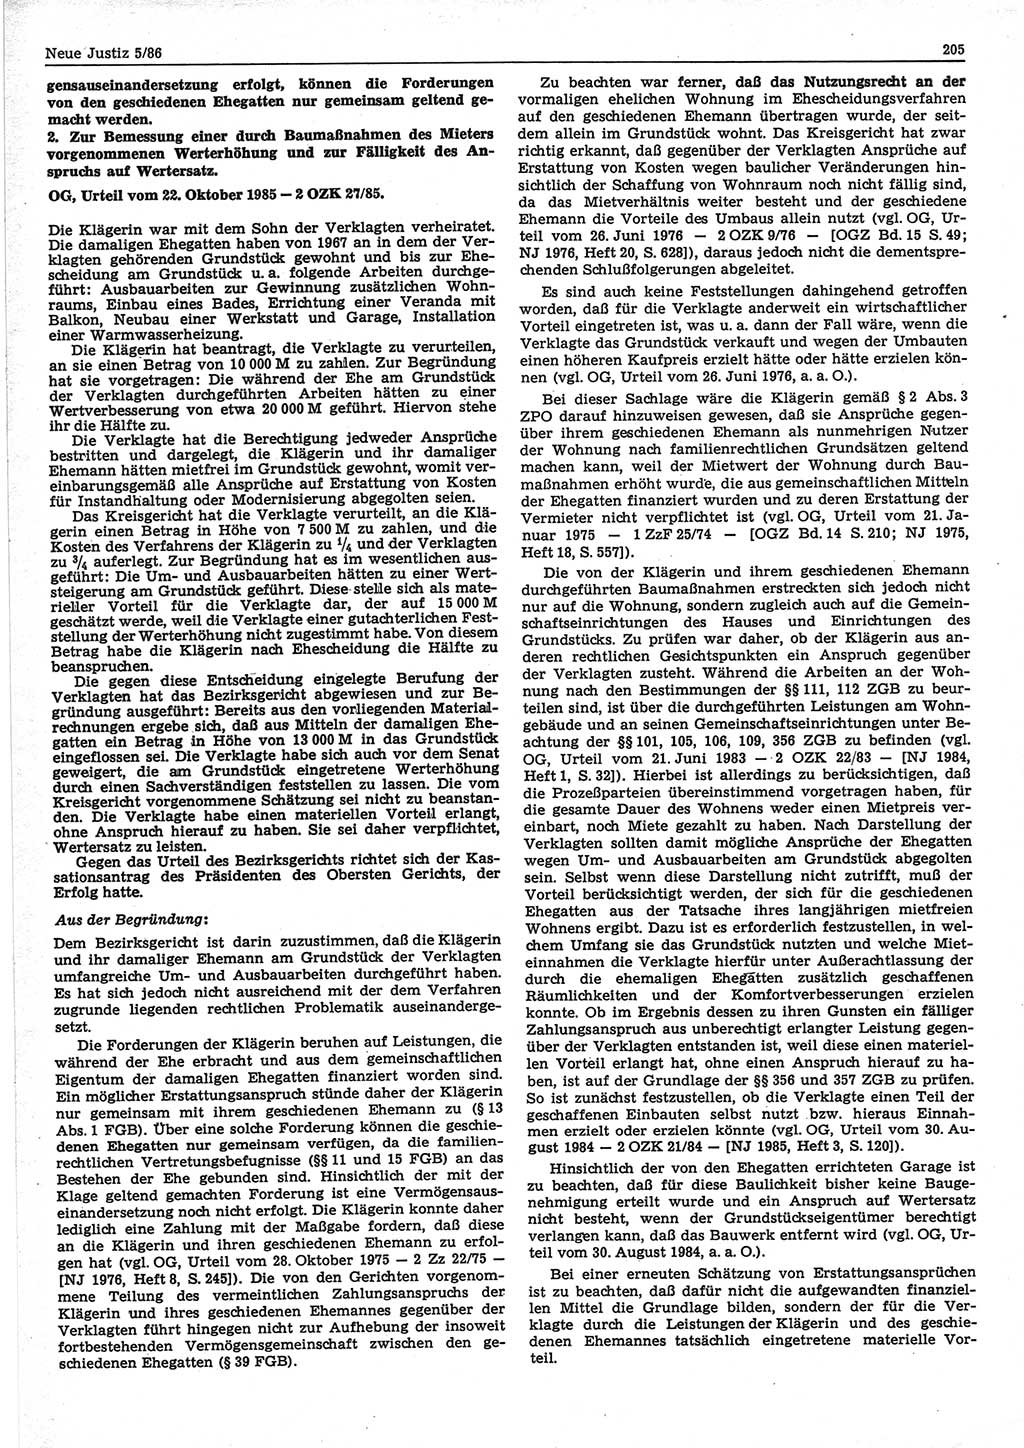 Neue Justiz (NJ), Zeitschrift für sozialistisches Recht und Gesetzlichkeit [Deutsche Demokratische Republik (DDR)], 40. Jahrgang 1986, Seite 205 (NJ DDR 1986, S. 205)